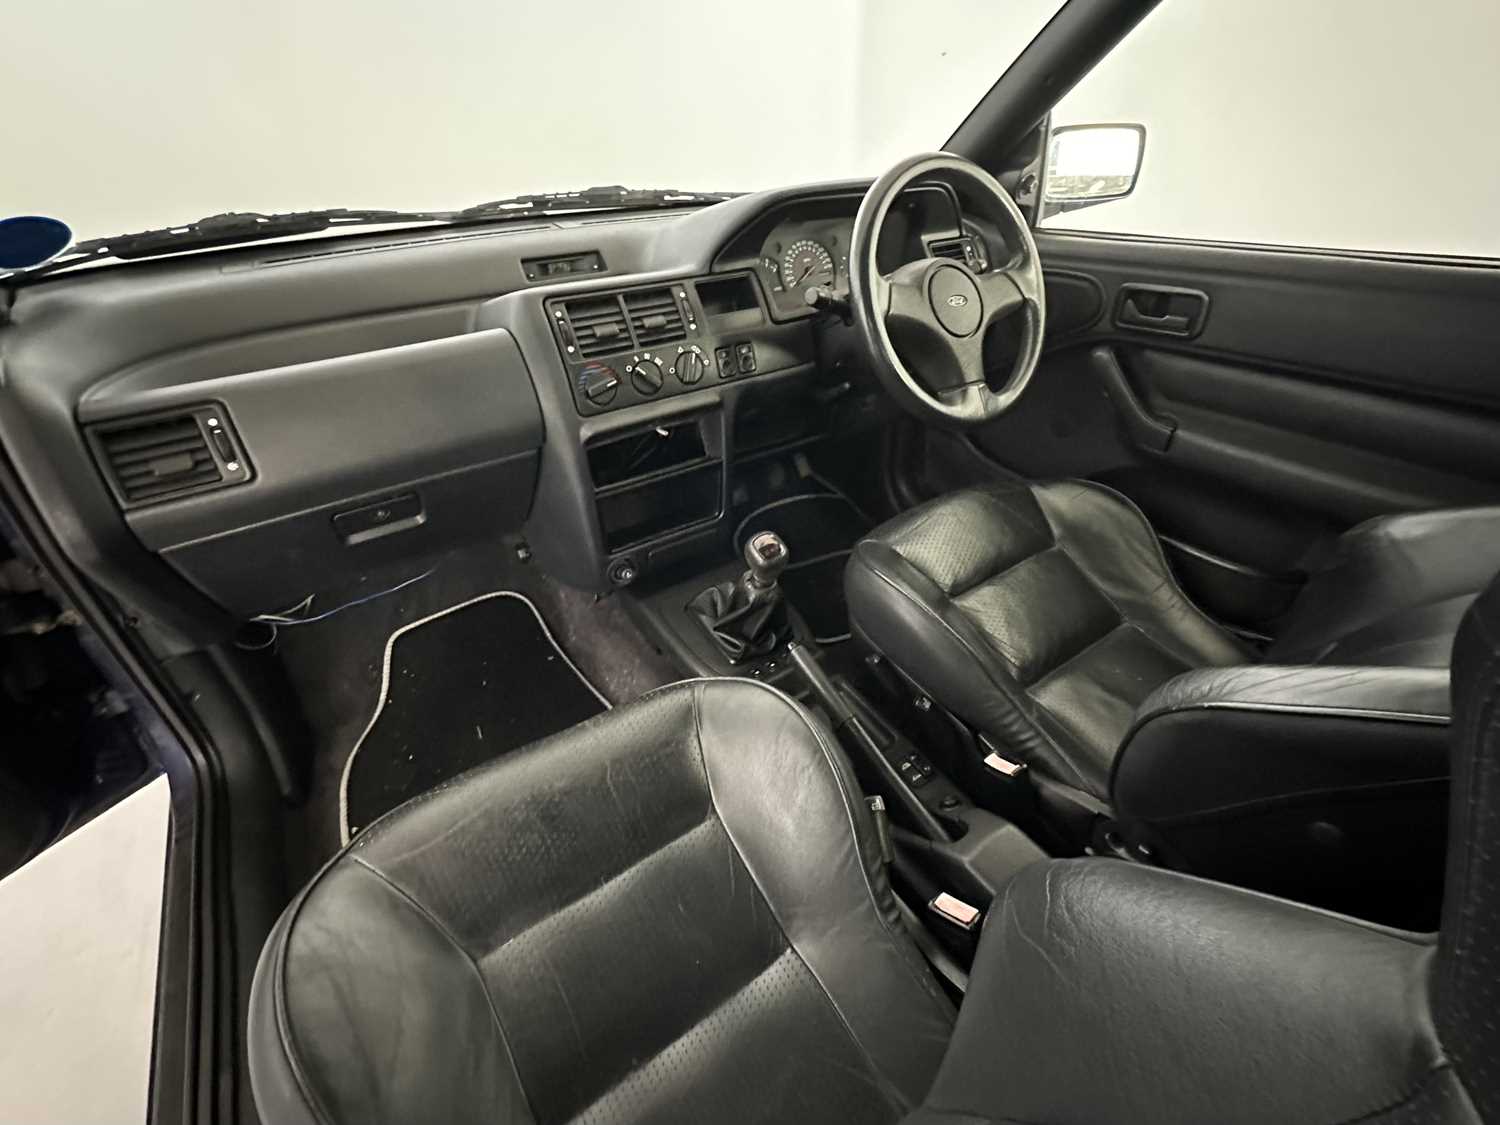 1993 Ford Escort XR3i Cabriolet - Image 23 of 30